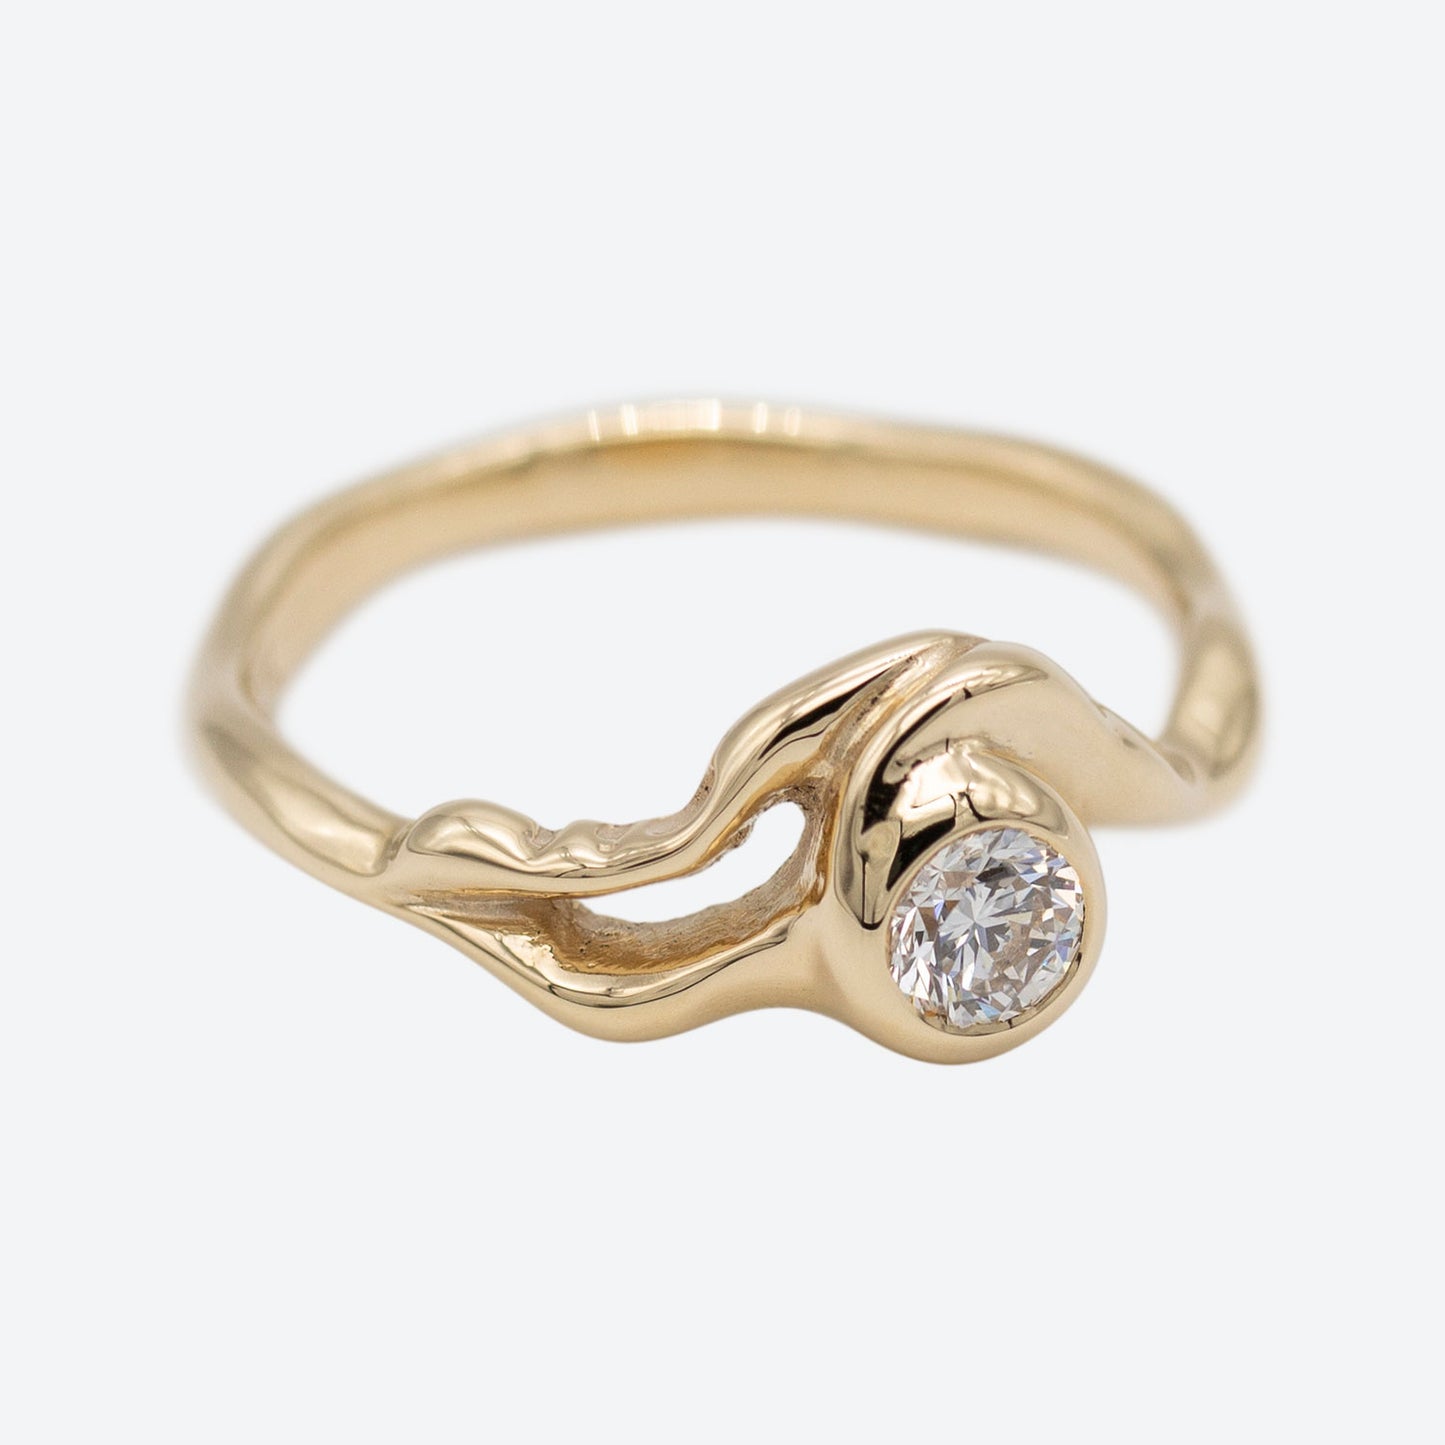 Organisk formgivet ring i guld med stor diamant placeret i centrum af ringen. Ud fra diamanten forgrener formgivningen sig rundt i ring skiven. Set i perspektiv